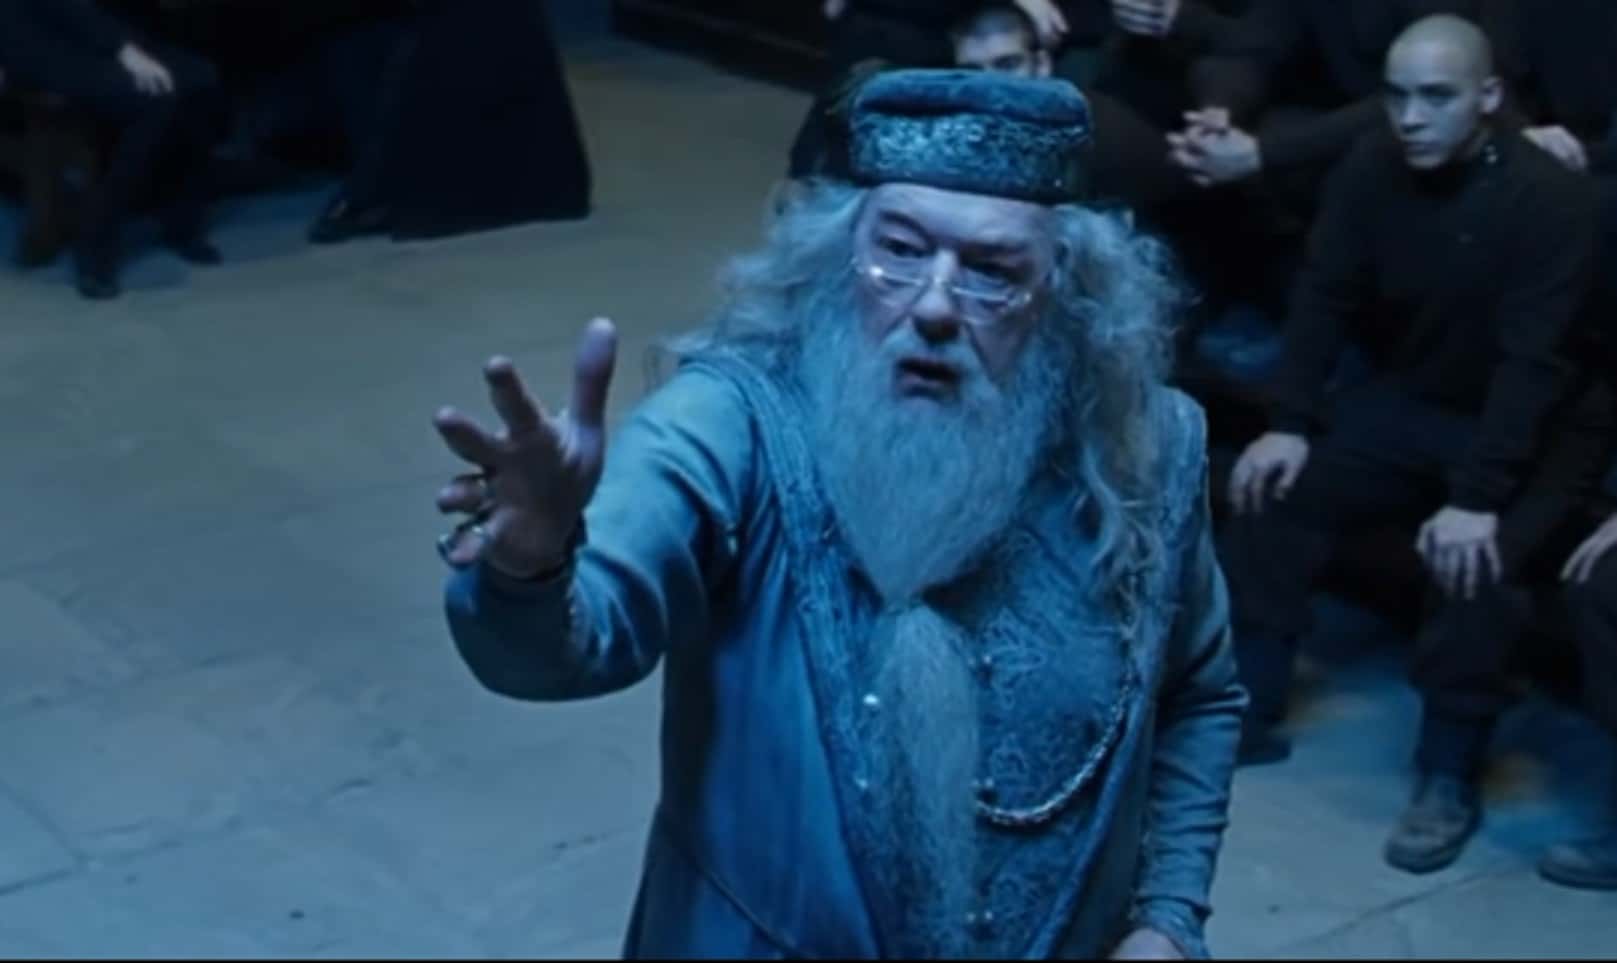 Albus Dumbledore Facts